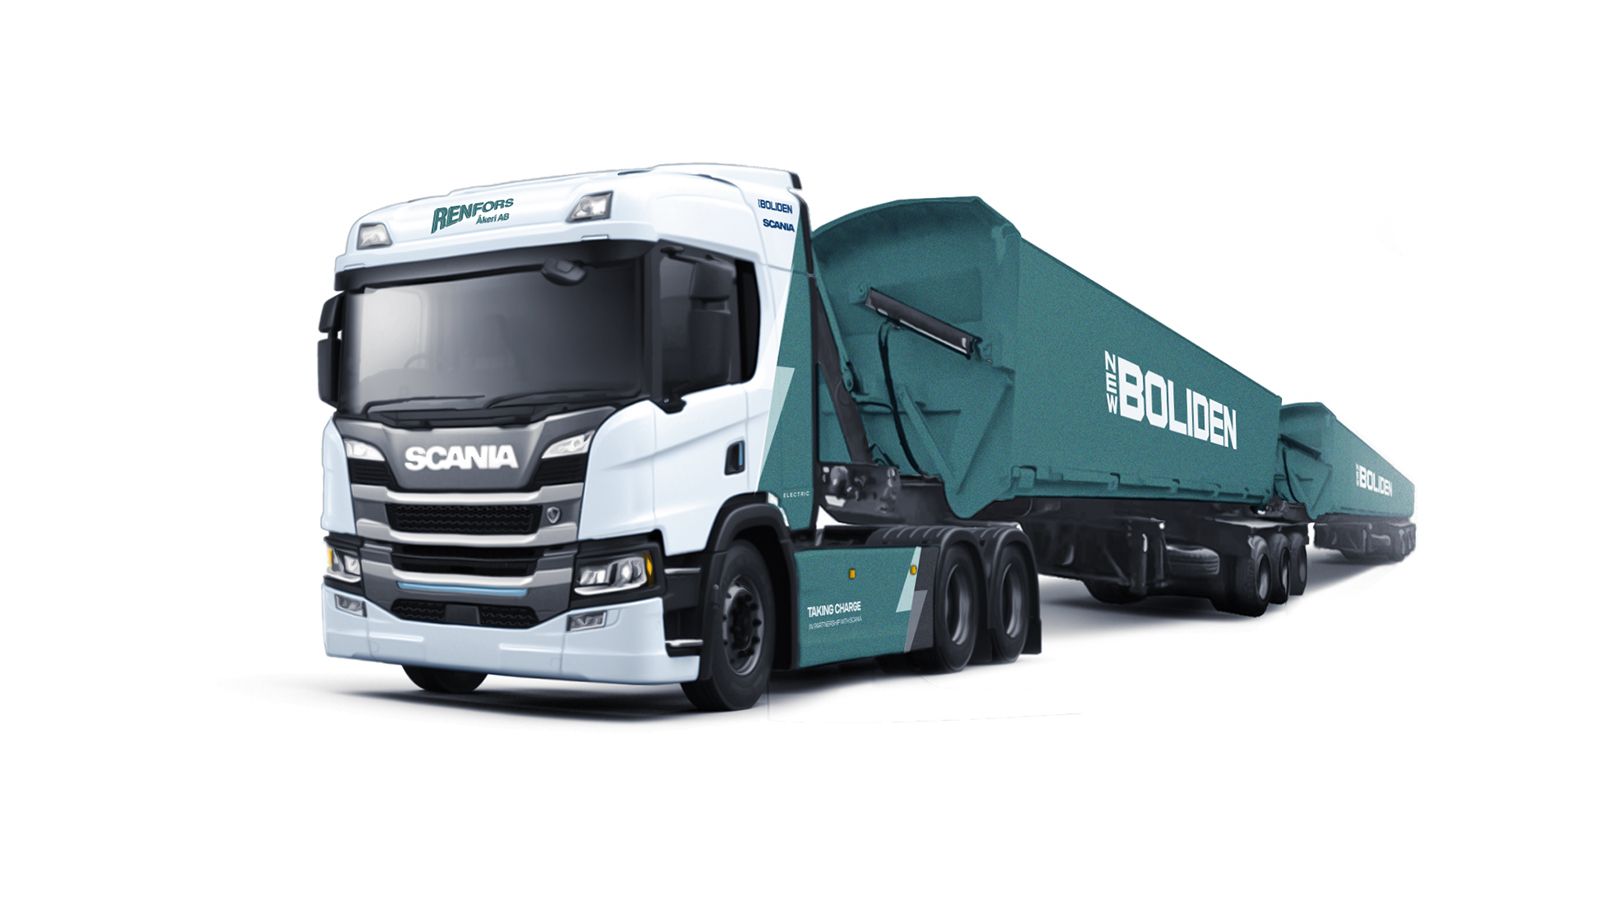 Μεικτό βάρος συρμού 74 τόνων για το ηλεκτρικό Scania που θα πιάσει δουλειά στα ορυχεία της Boliden στη βόρεια Σουηδία.